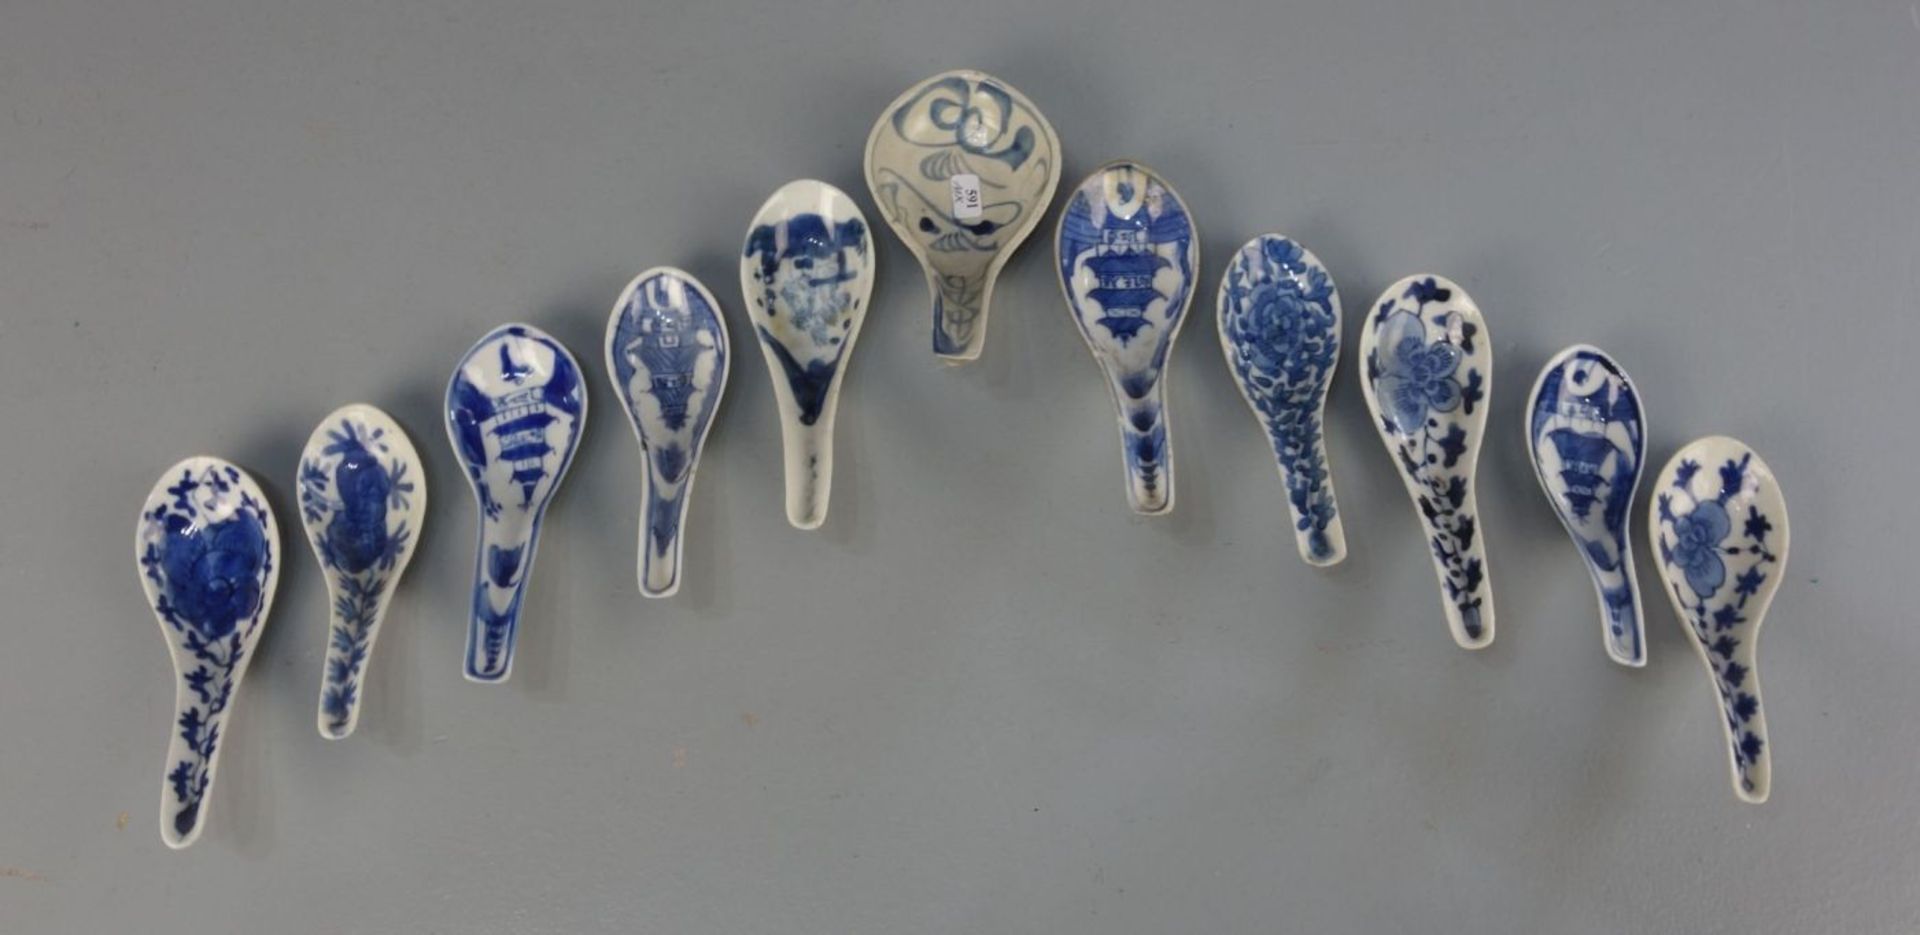 KONVOLUT VON 11 LÖFFELN, Porzellan, China, um 1900. Unterschiedliche Formen und Dekore in